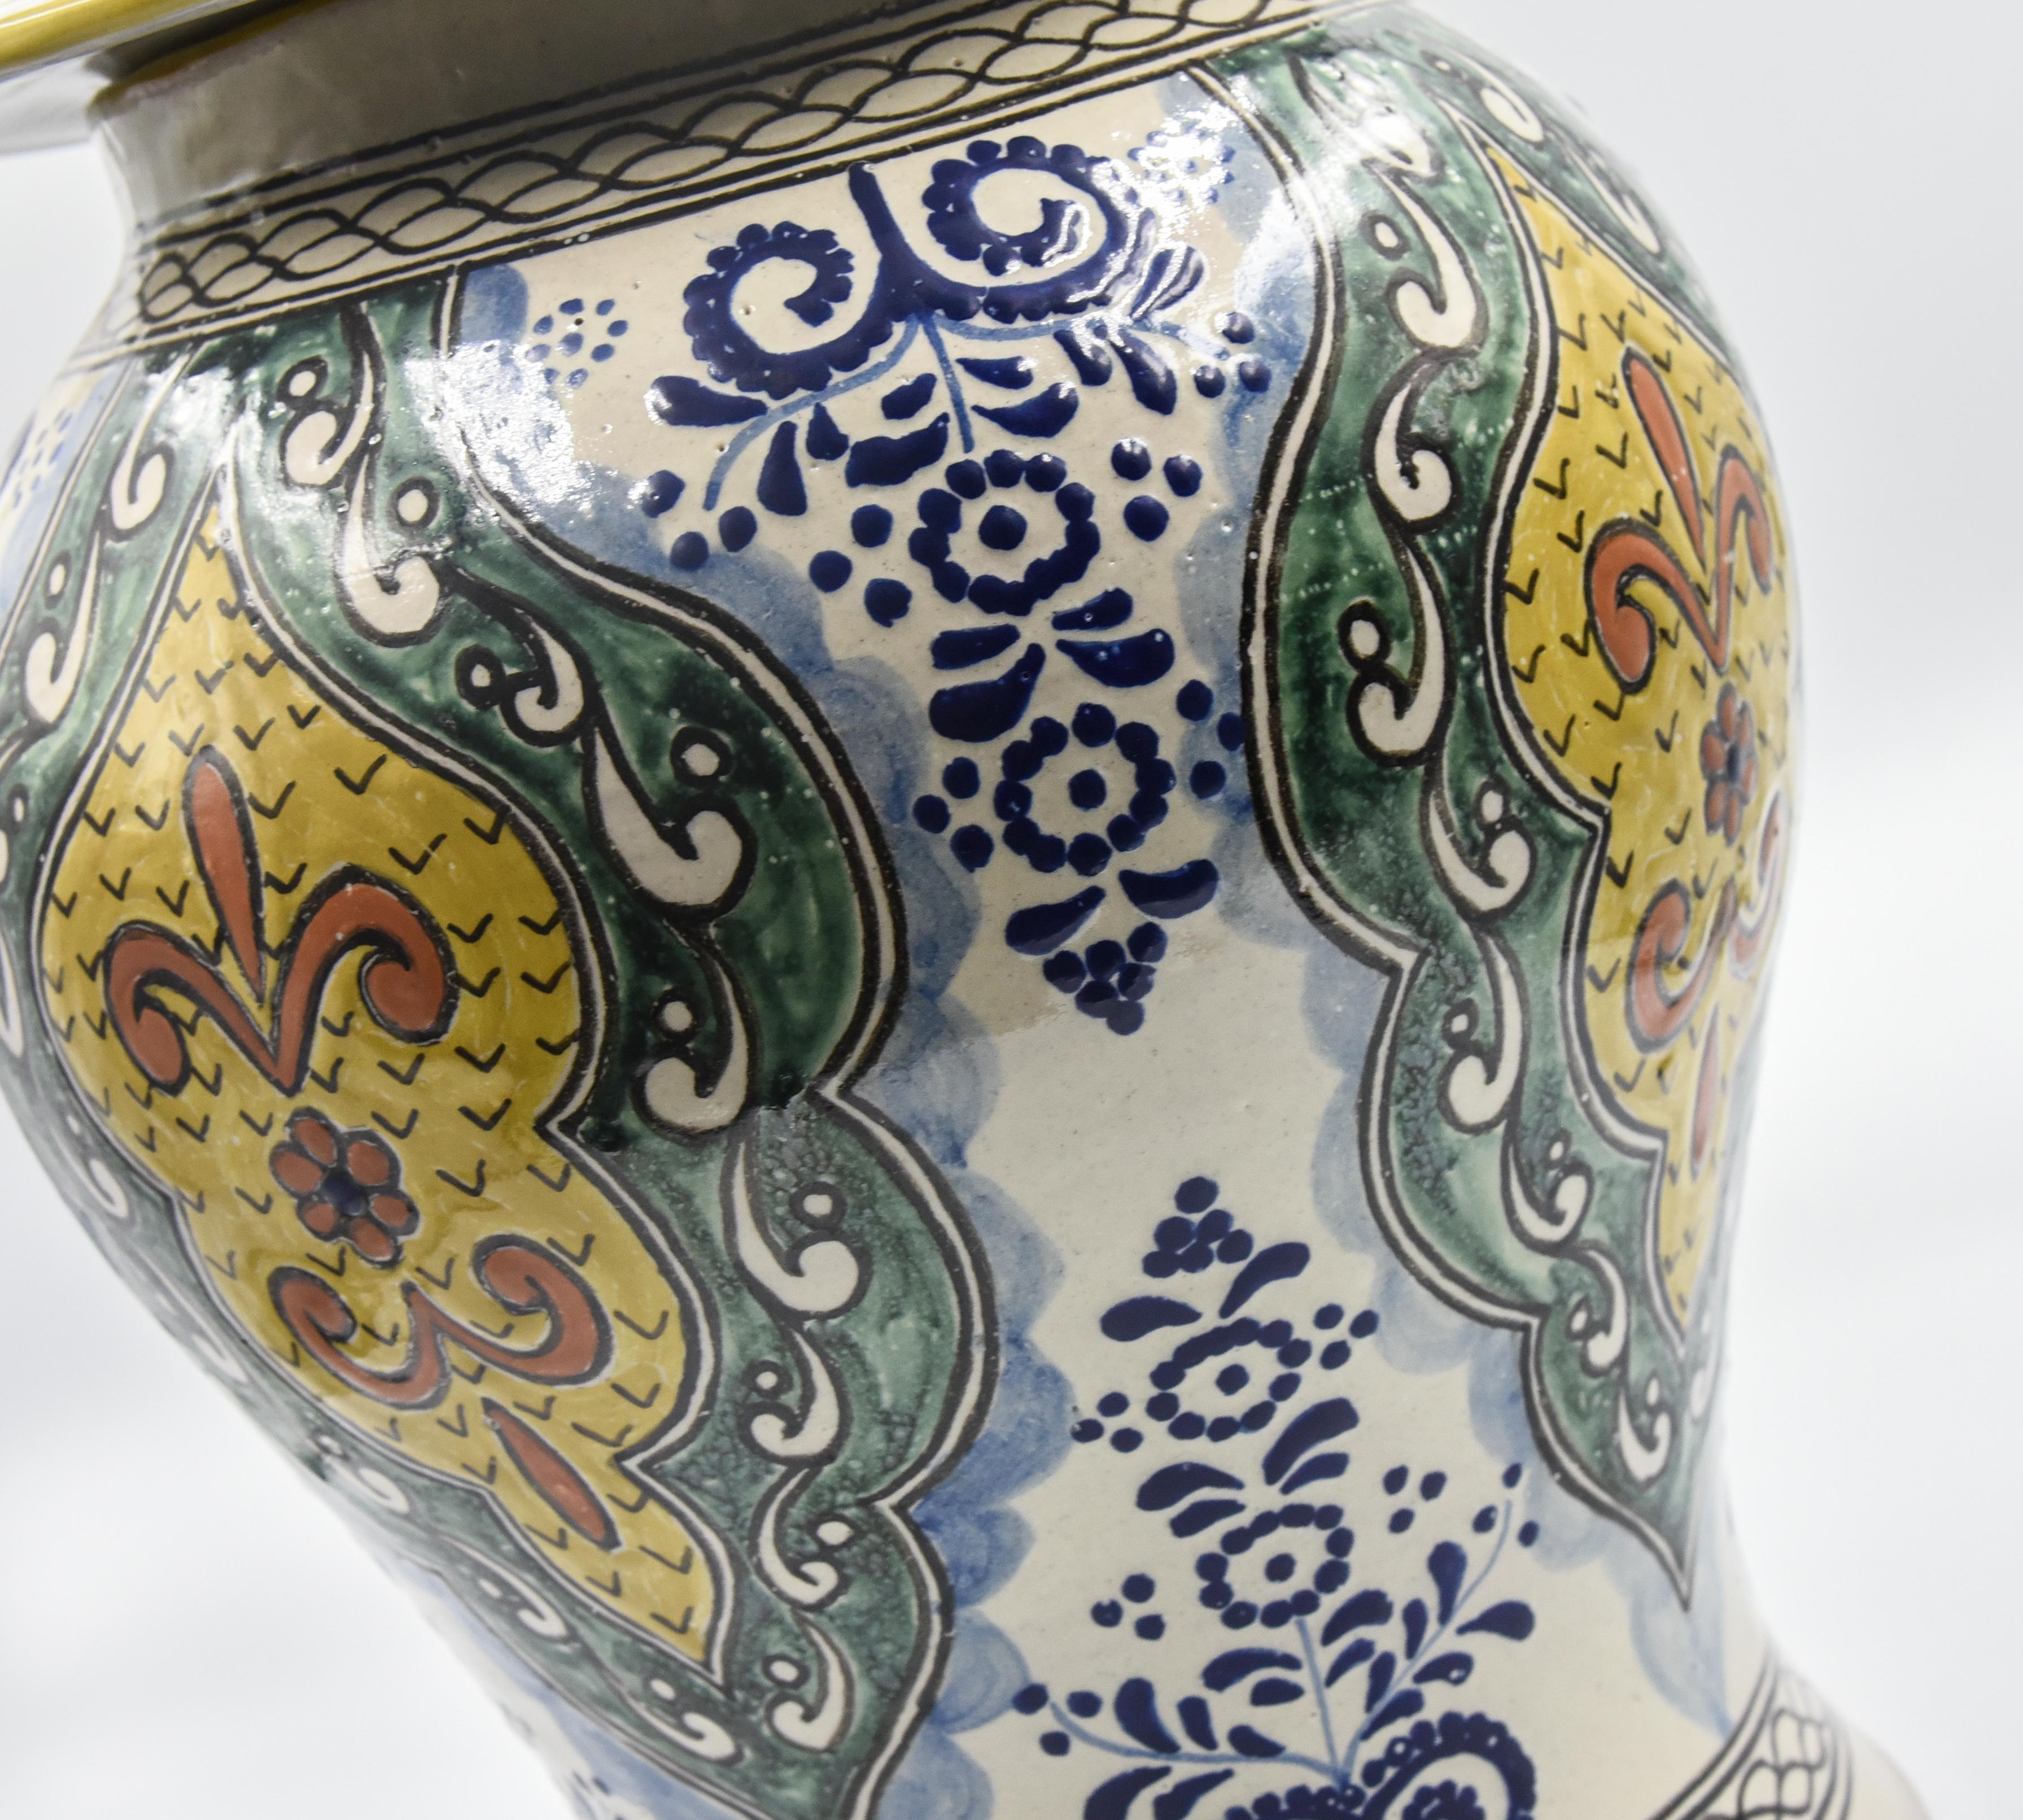 Authentische Talavera dekorative Vase Volkskunst Gefäß mexikanischen Keramik blau gelb 2